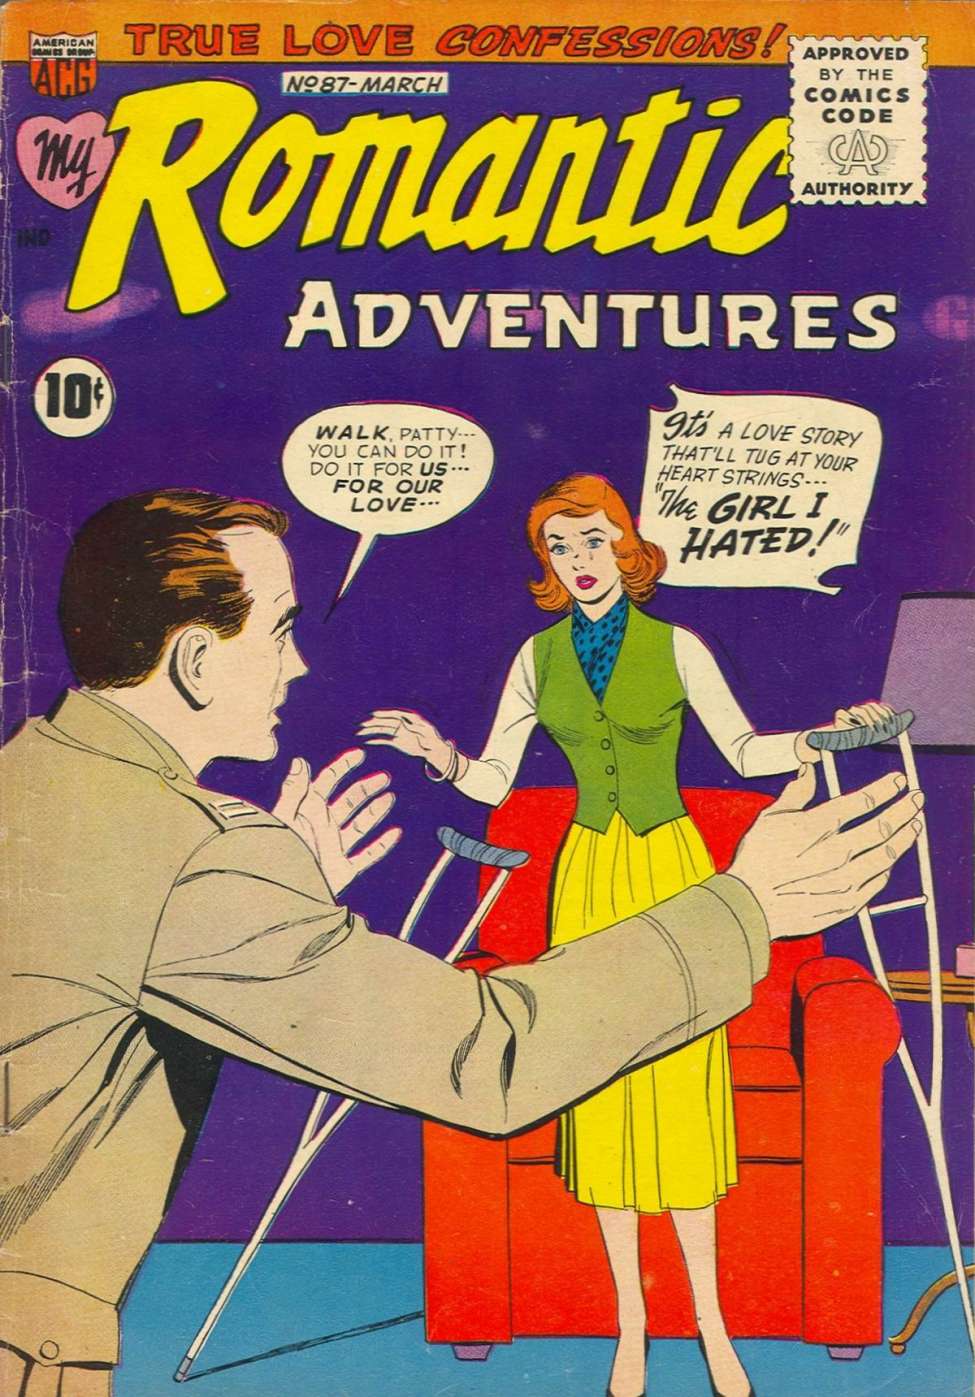 Adventures romance. American Love story. 1950'S Adventures Romantic Comics.